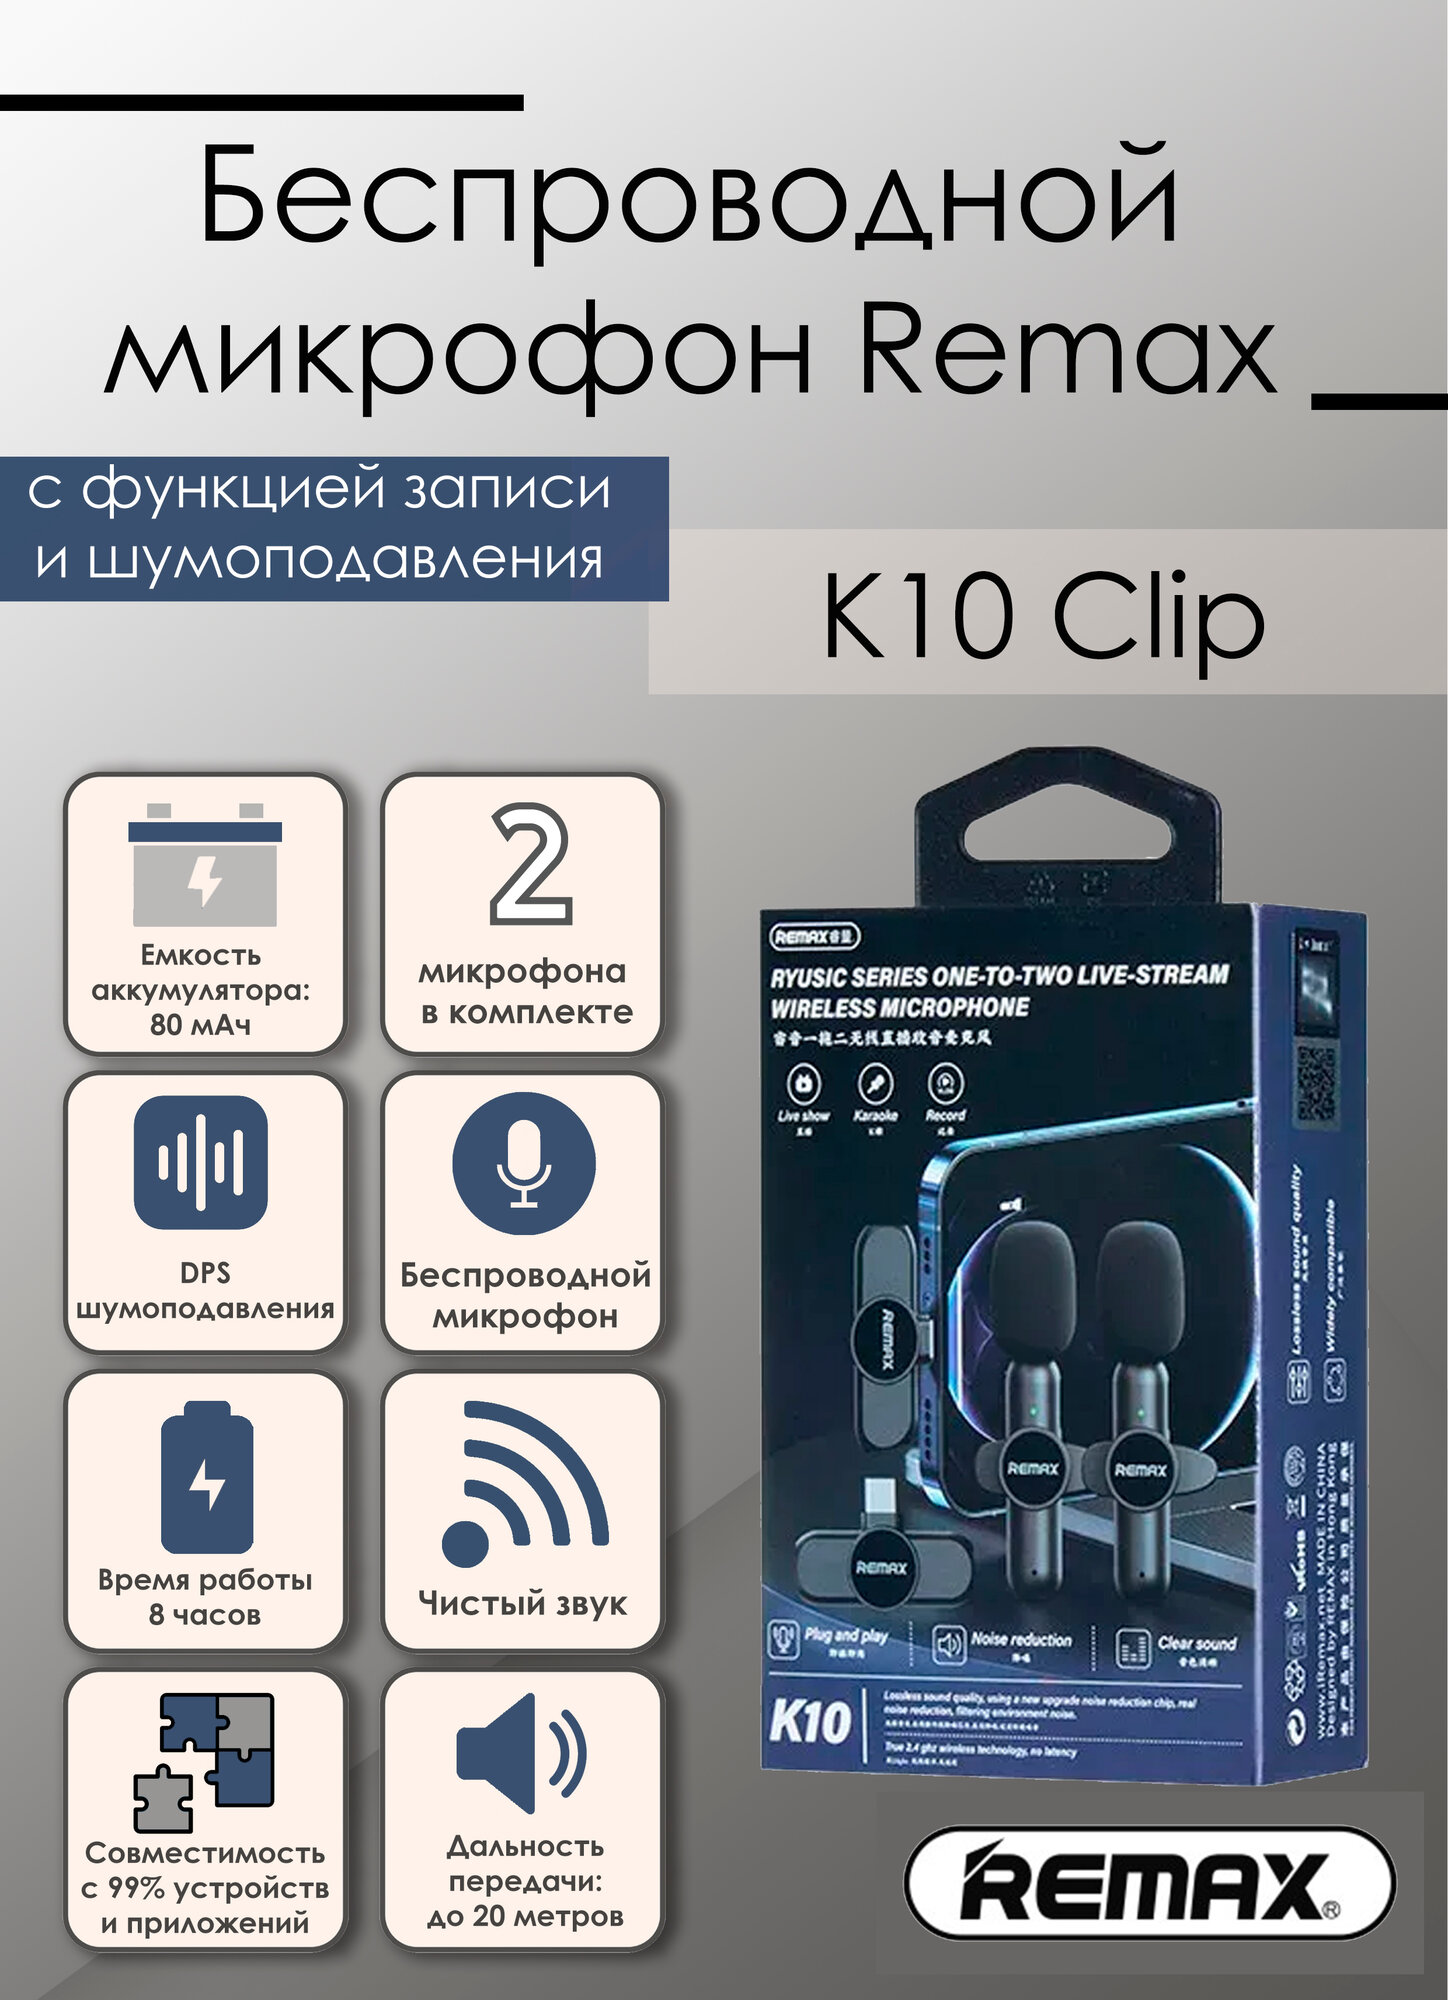 Беспроводной петличный микрофон для интервью и стриминга в соц. сетях Remax K10 Clip